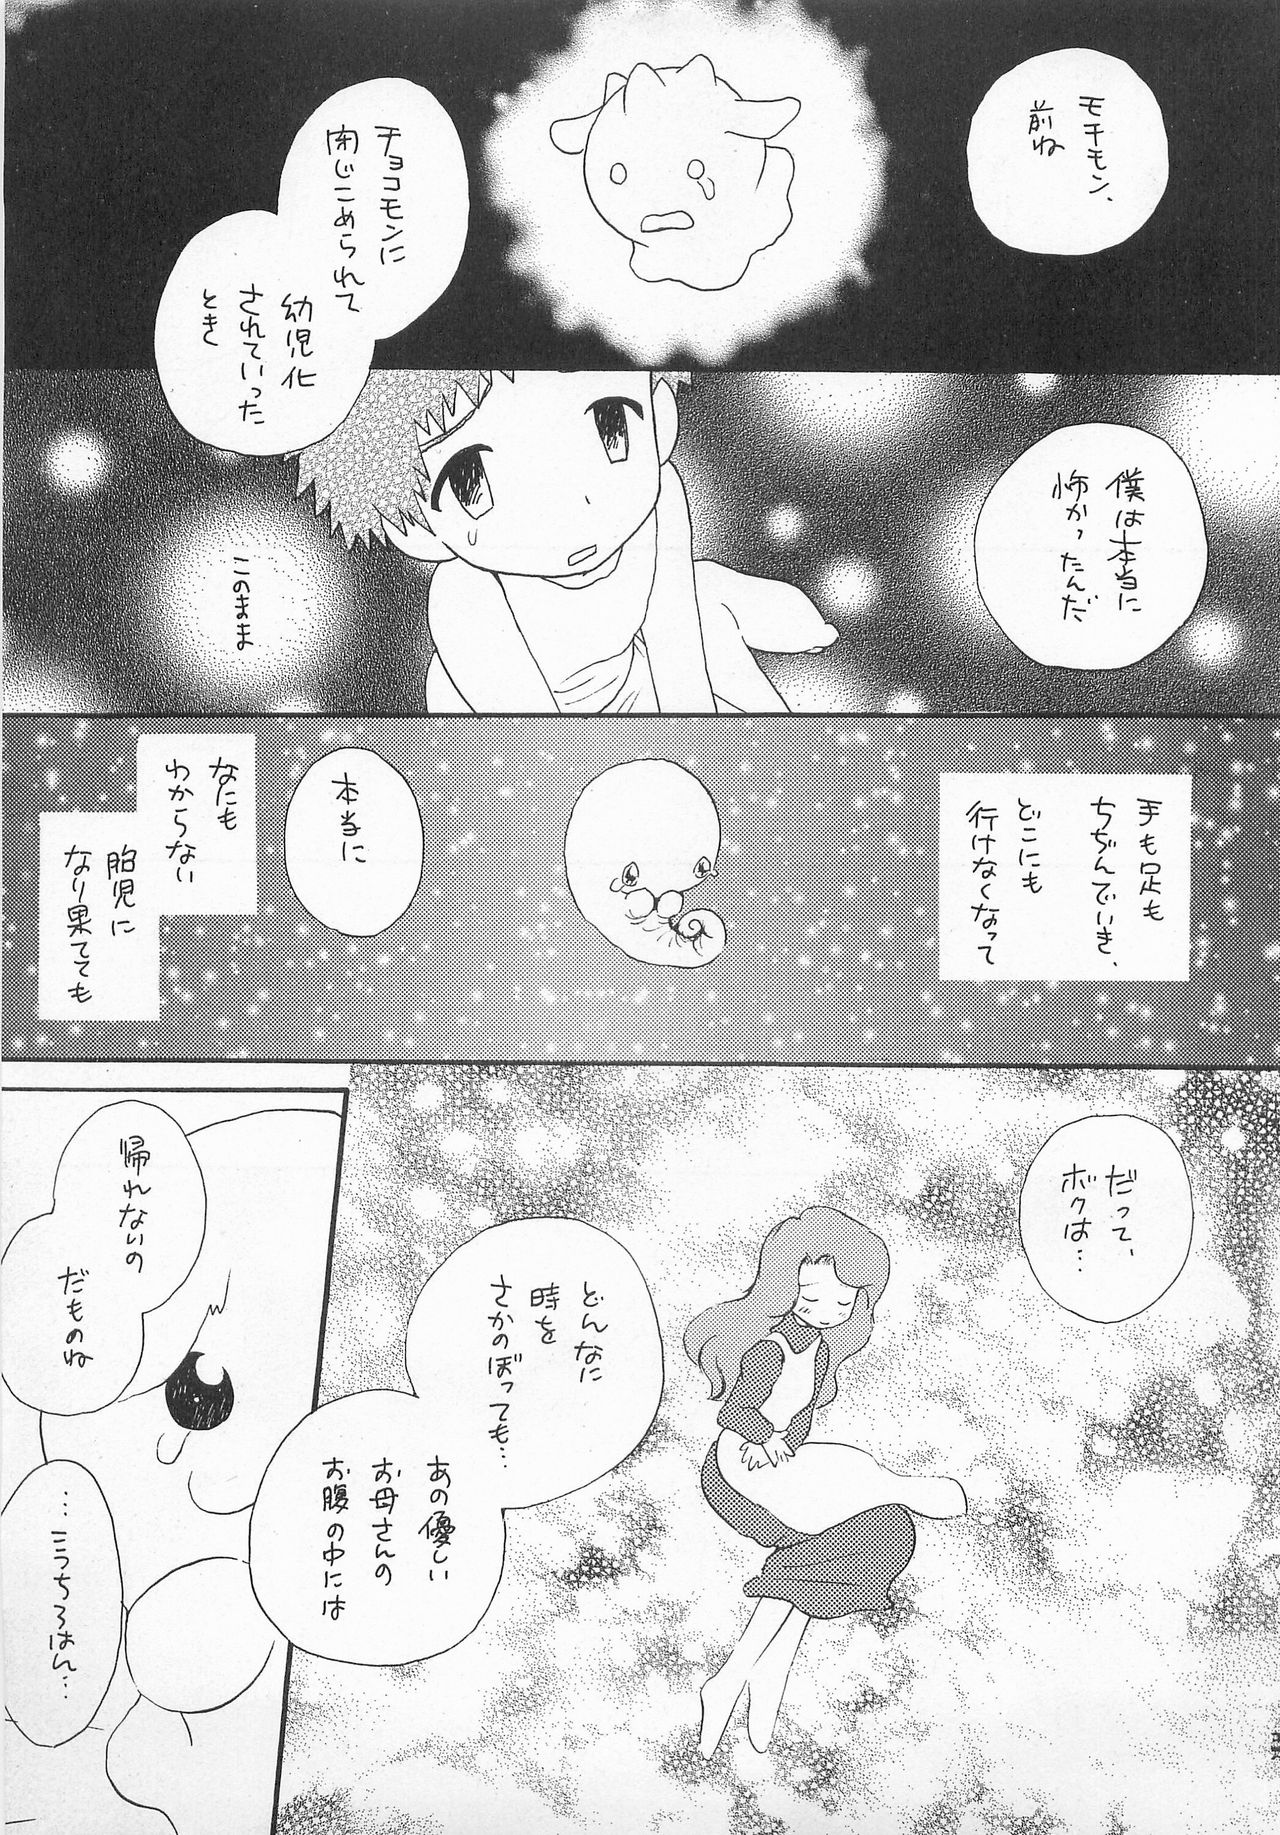 (HaruCC6) [Haniwa Mania, Kuru Guru DNA (Pon Takahanada, Hoshiai Hiro)] Jogress Daihyakka (Digimon Adventure 02) page 36 full